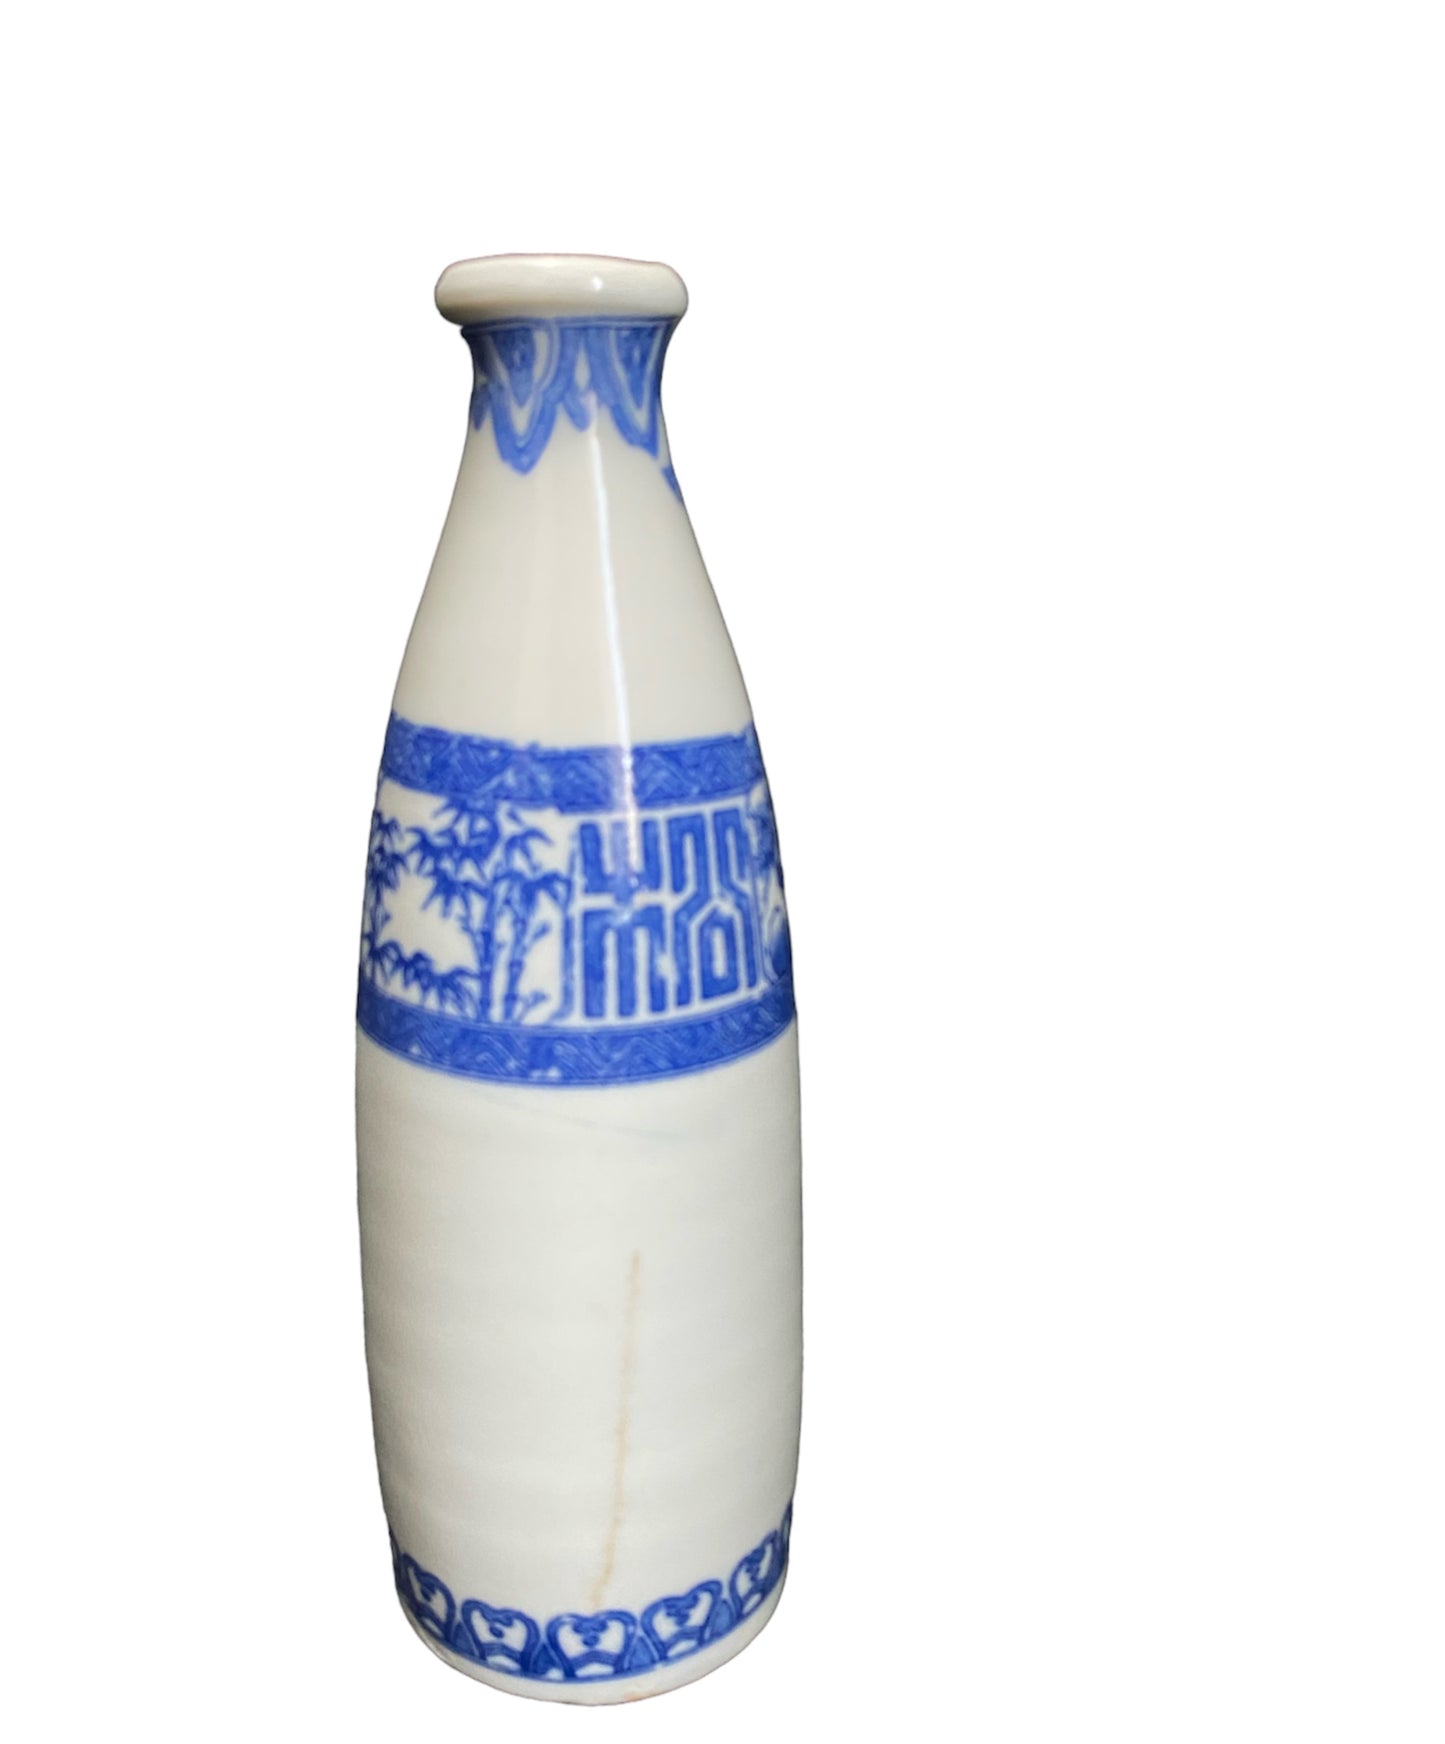 INBAN / stamp sake bottle No1